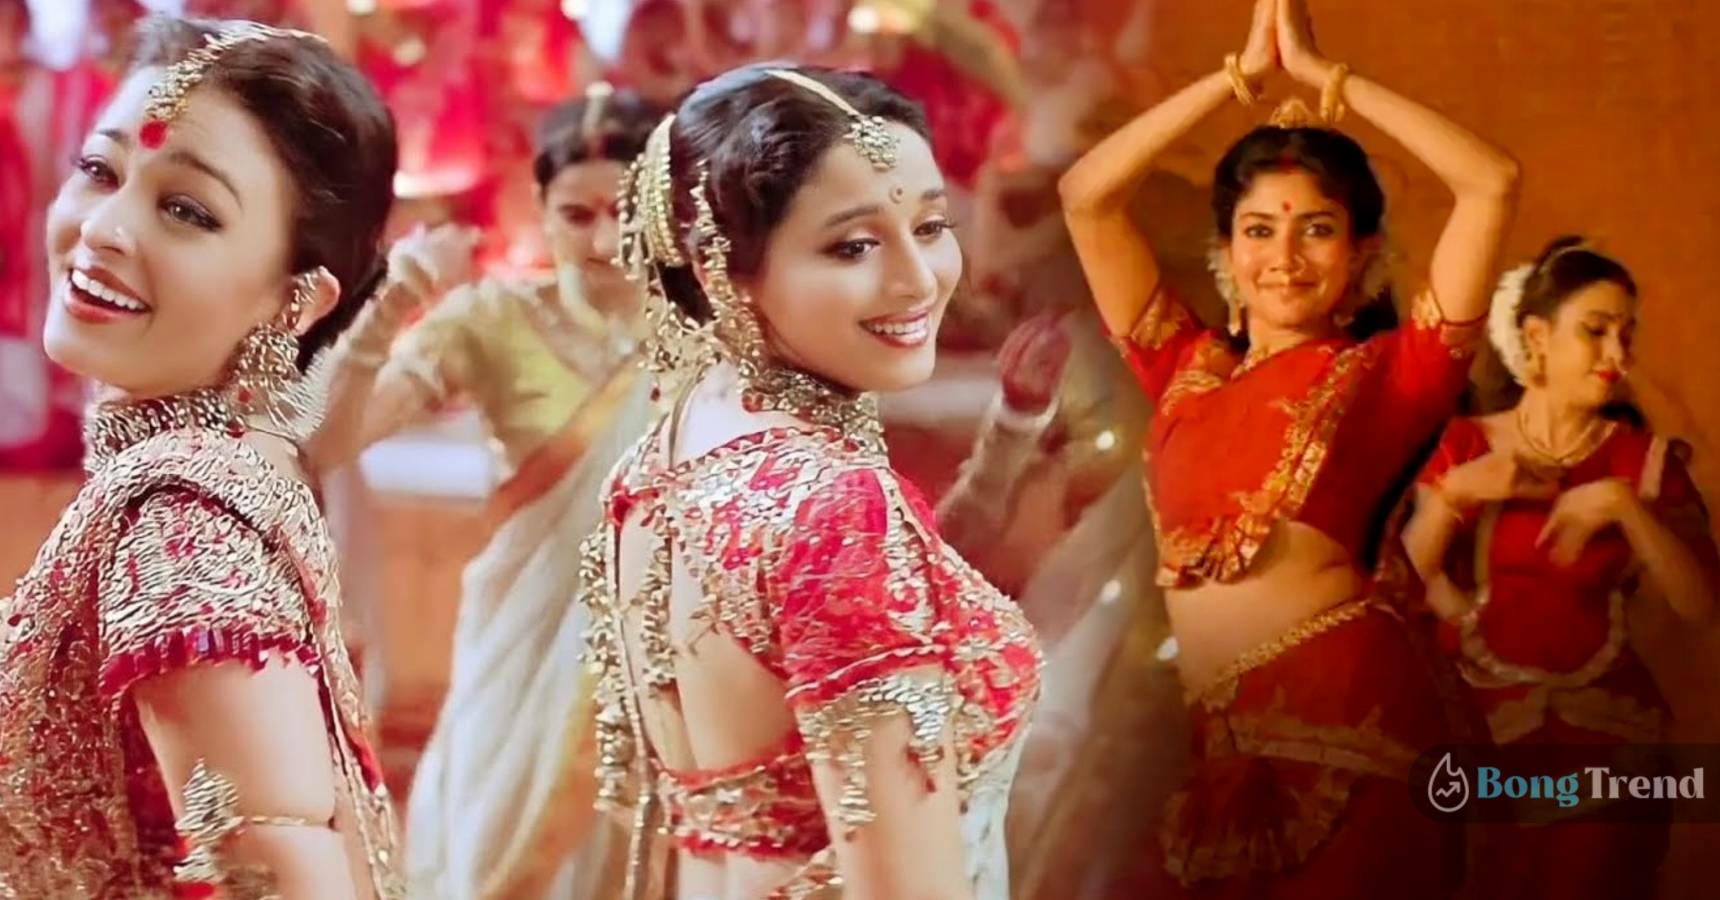 Sai Pallavi says she has learnt dance from Aishwarya Rai Bachchan and Madhuri Dixit